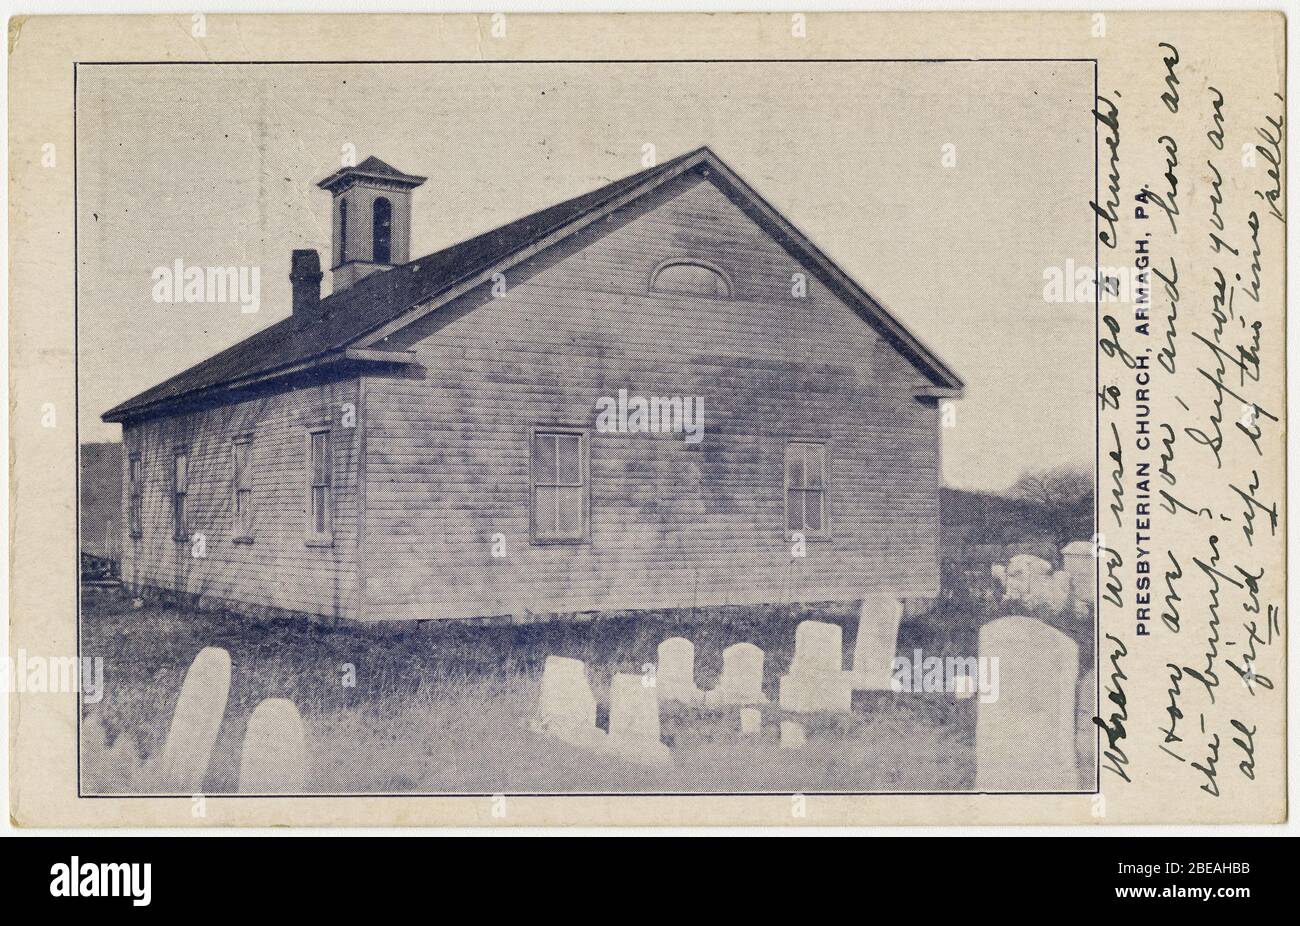 'English: Église presbytérienne à Armagh, Pennsylvanie à partir d'une carte postale antérieure à 1923 De RG 428, Postcard Collection, Presbyterian Historical Society, Philadelphie, Pennsylvanie. L'église presbytérienne Armagh a été construite en 1835-186, avec des racines qui remontent à 1786, avec une église en rondins construite en 1820. Il a été fusionné en 1963 dans l'église presbytérienne Armagh-Seward vers 3,5 sud à Seward, PA. Le cimetière demeure à Armagh le long de la route 56. Nouvelles - l'église presbytérienne Armagh-Seward observe le 50ème anniversaire de la fusion. Ce bâtiment a été détruit en 2004 après avoir été frappé par un camion.; avant 1923 da Banque D'Images